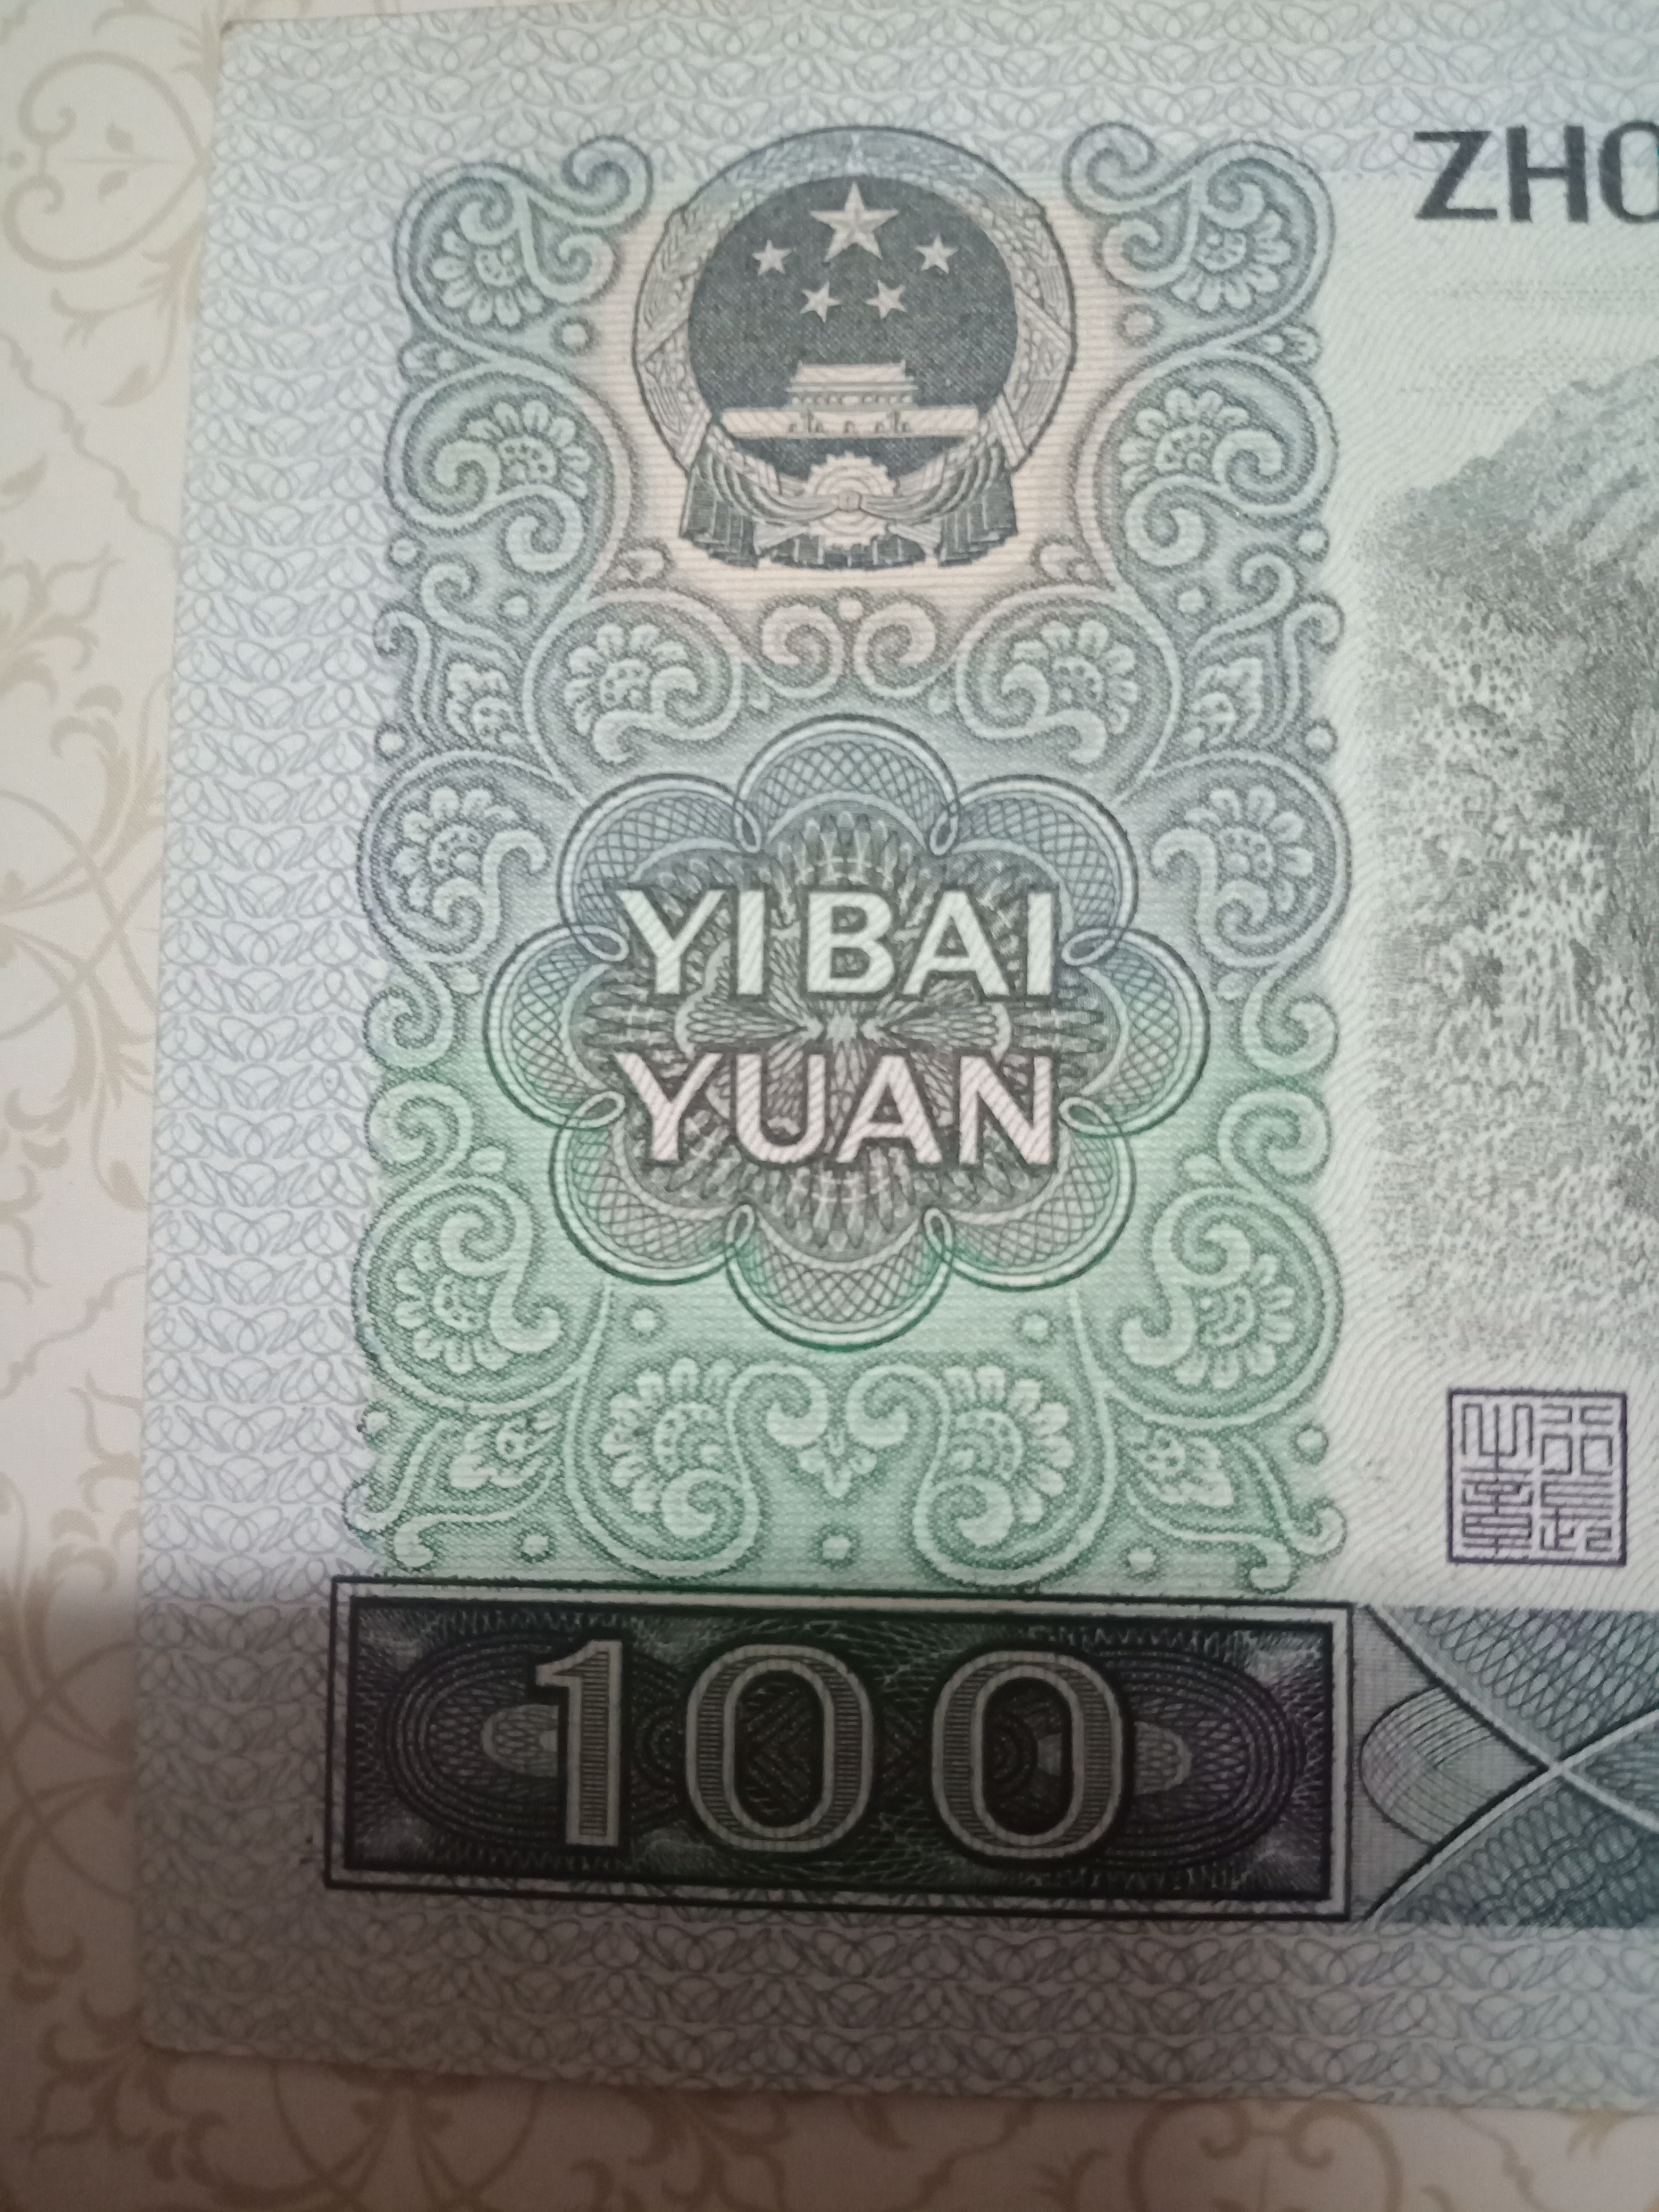 100元第三套人民币,由下图可以看出此币是中国梦